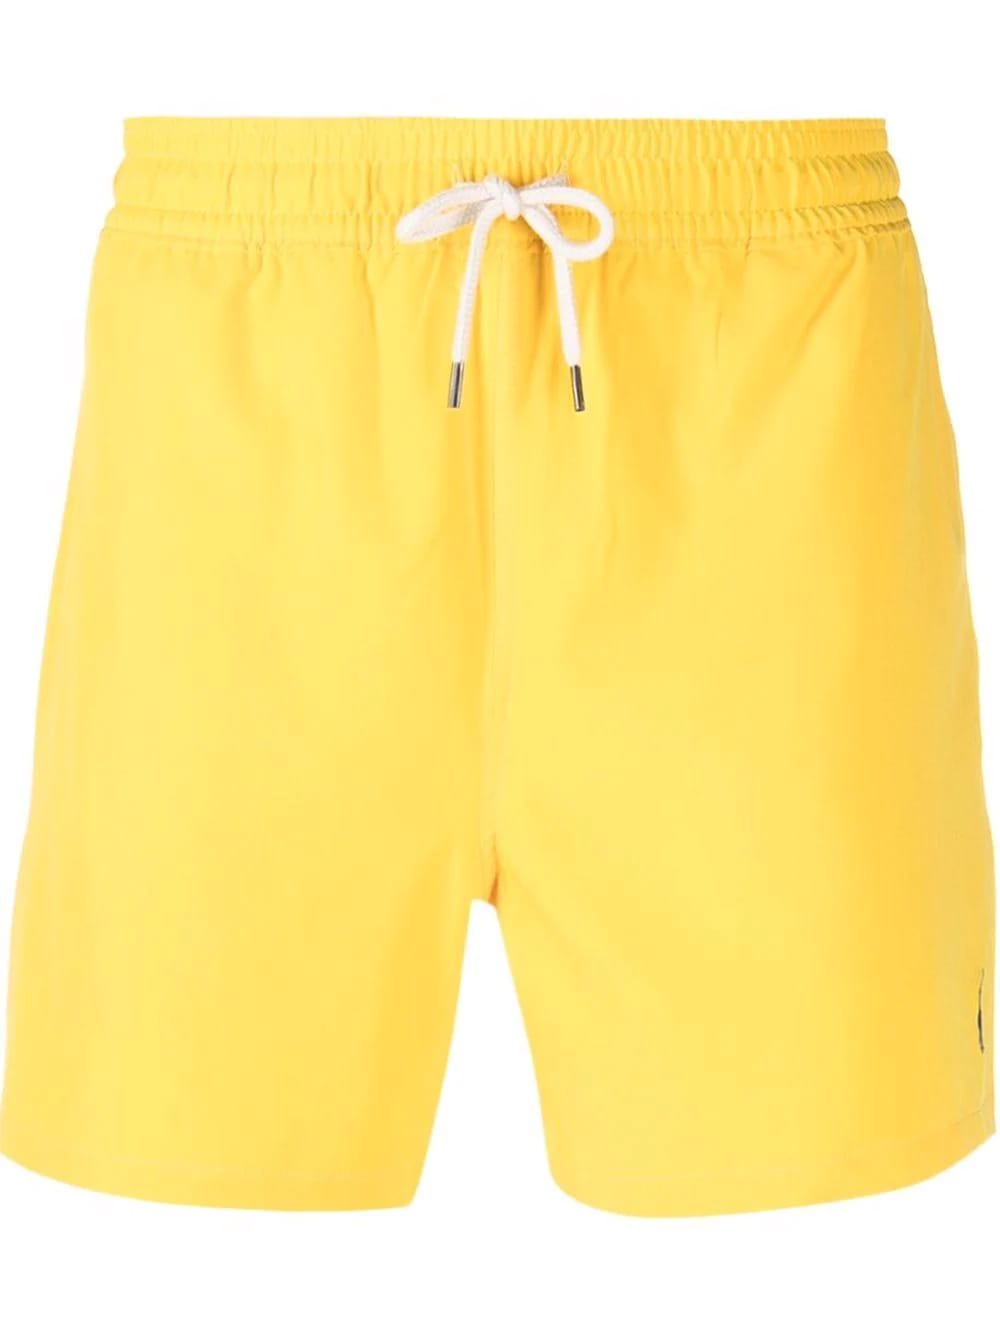 Ralph Lauren Man Yellow Traveler Swim Shorts